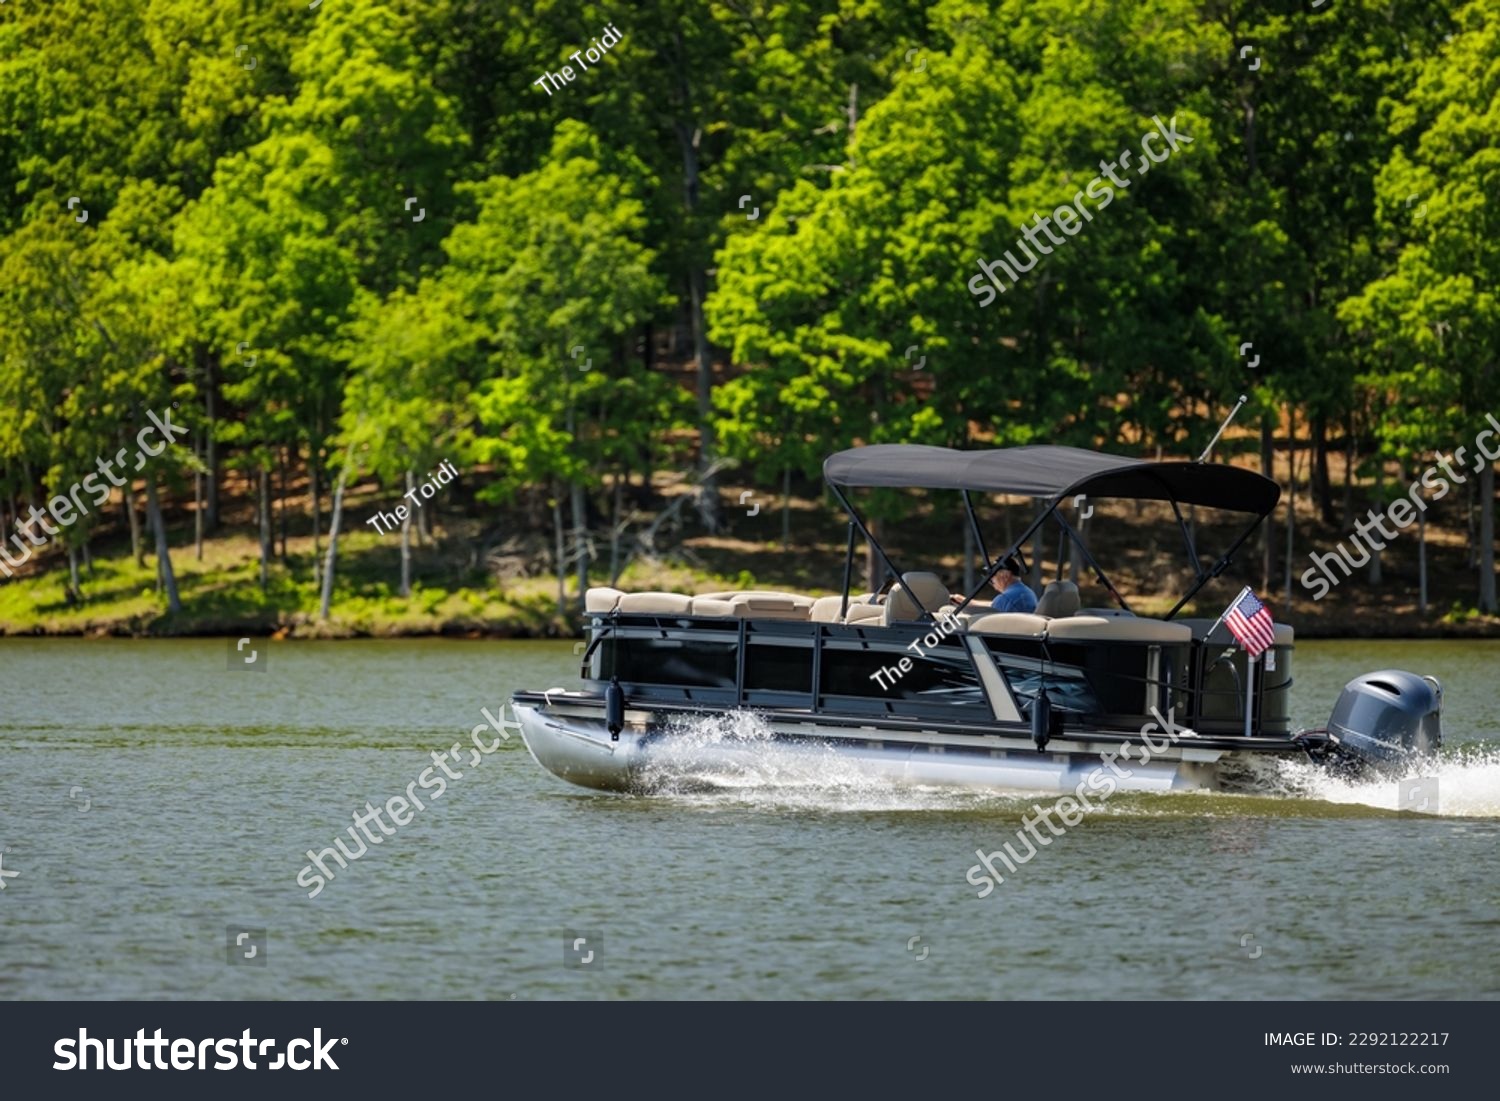 Boater on pontoon boat enjoying summer day on Lake. Pontoon party boat cruising on freshwater lake. #2292122217